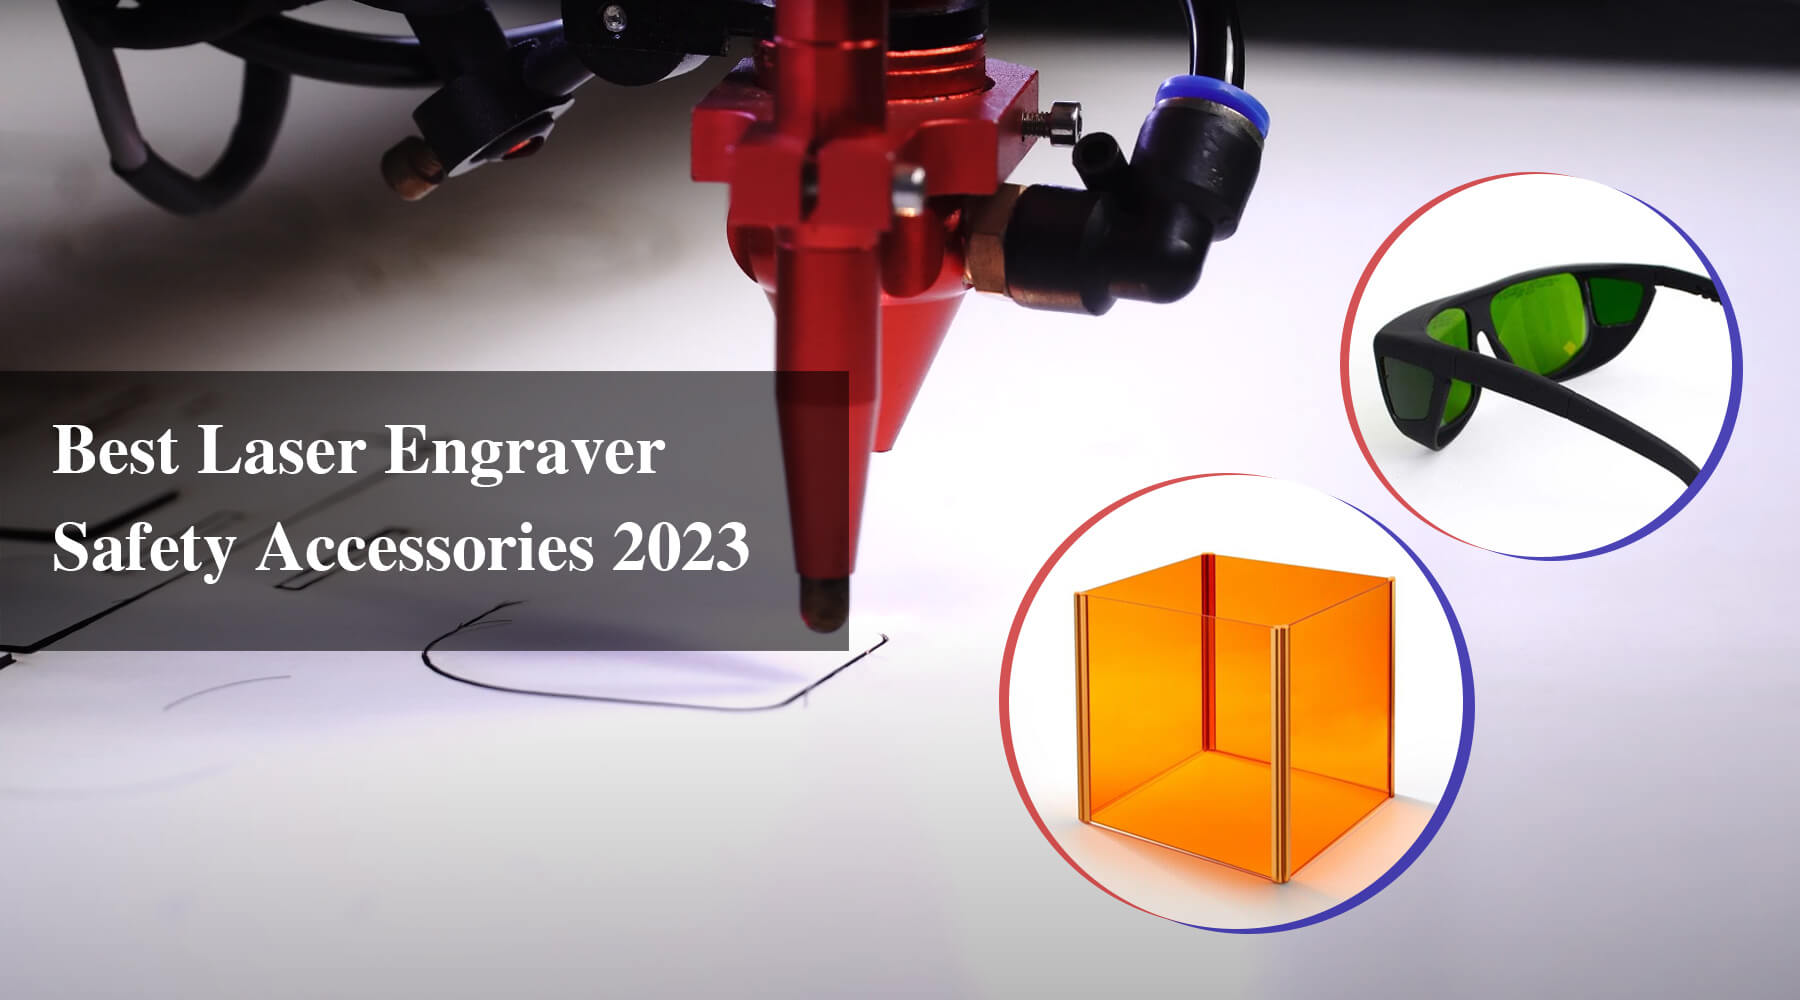 Best Laser Engraver Safety Accessories 2023